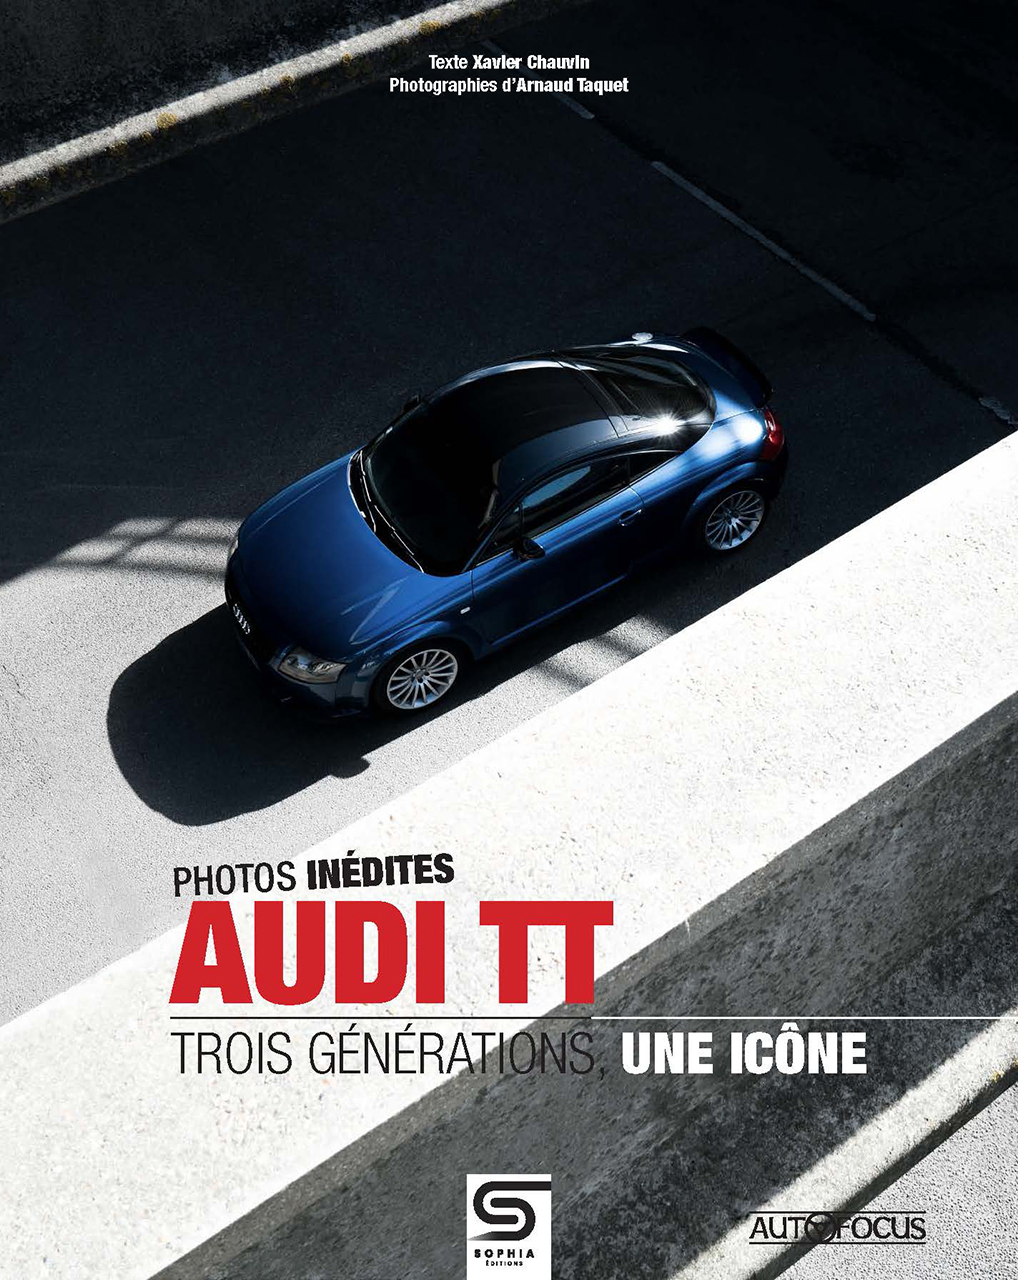 Audi tt trois generations une icone